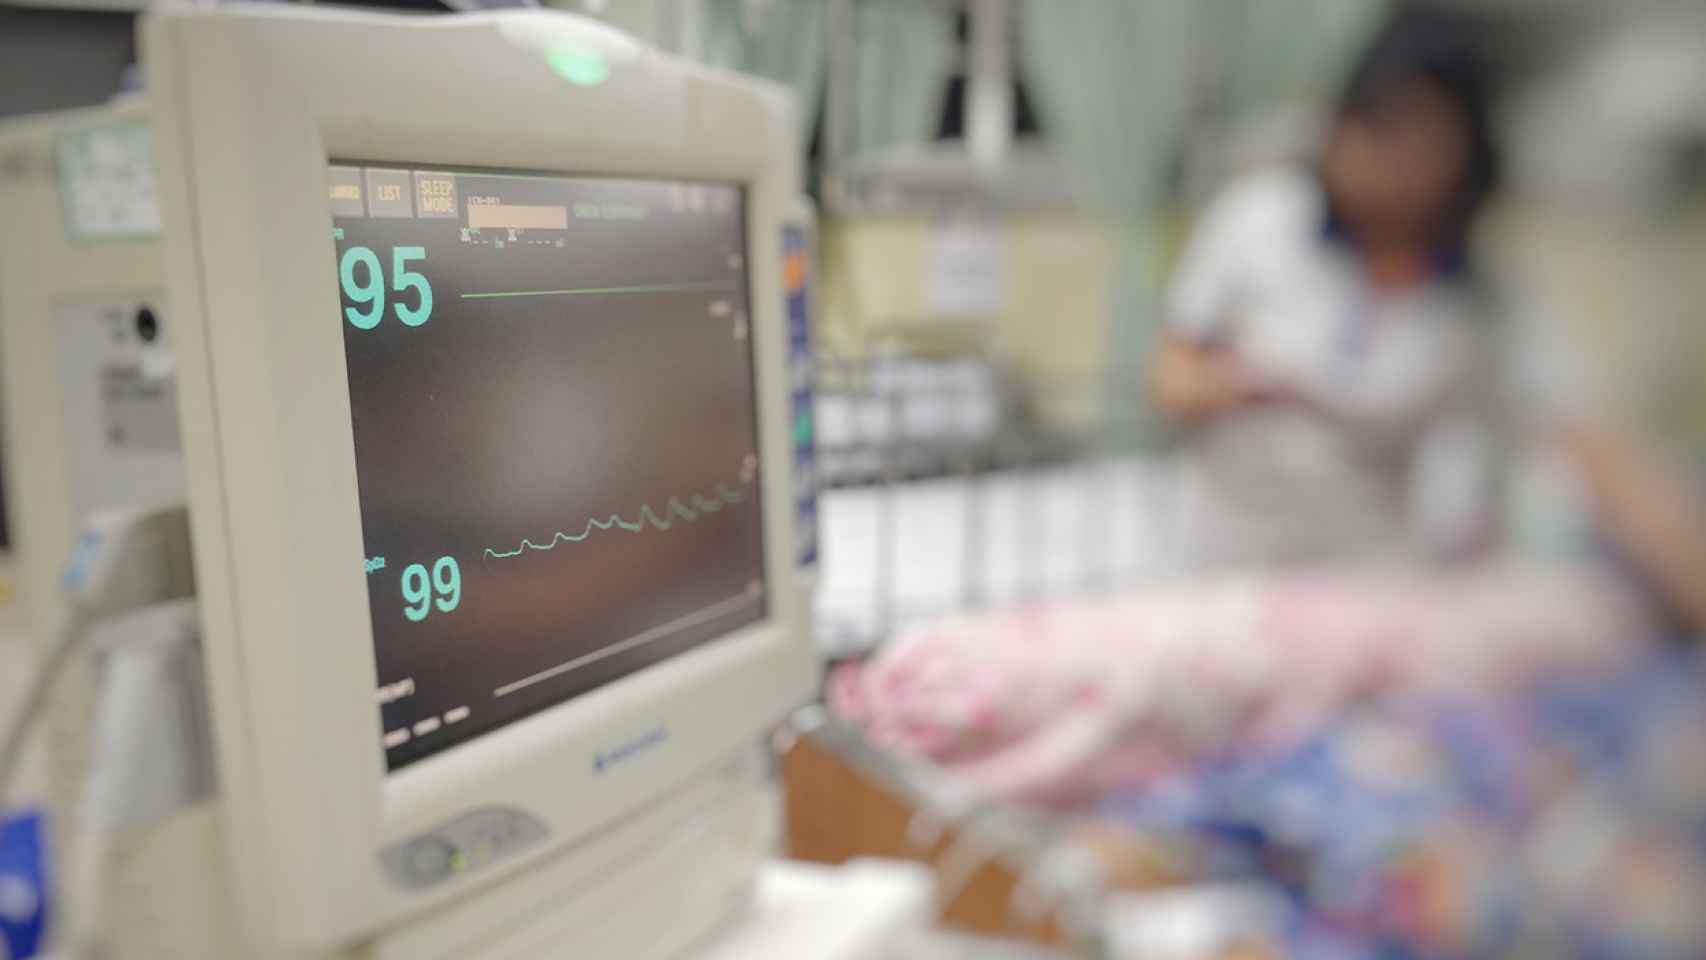 En los hospitales hay equipos de diagnósticos que se instalaron hace 10 años y su software no se ha actualizado ni una sola vez.